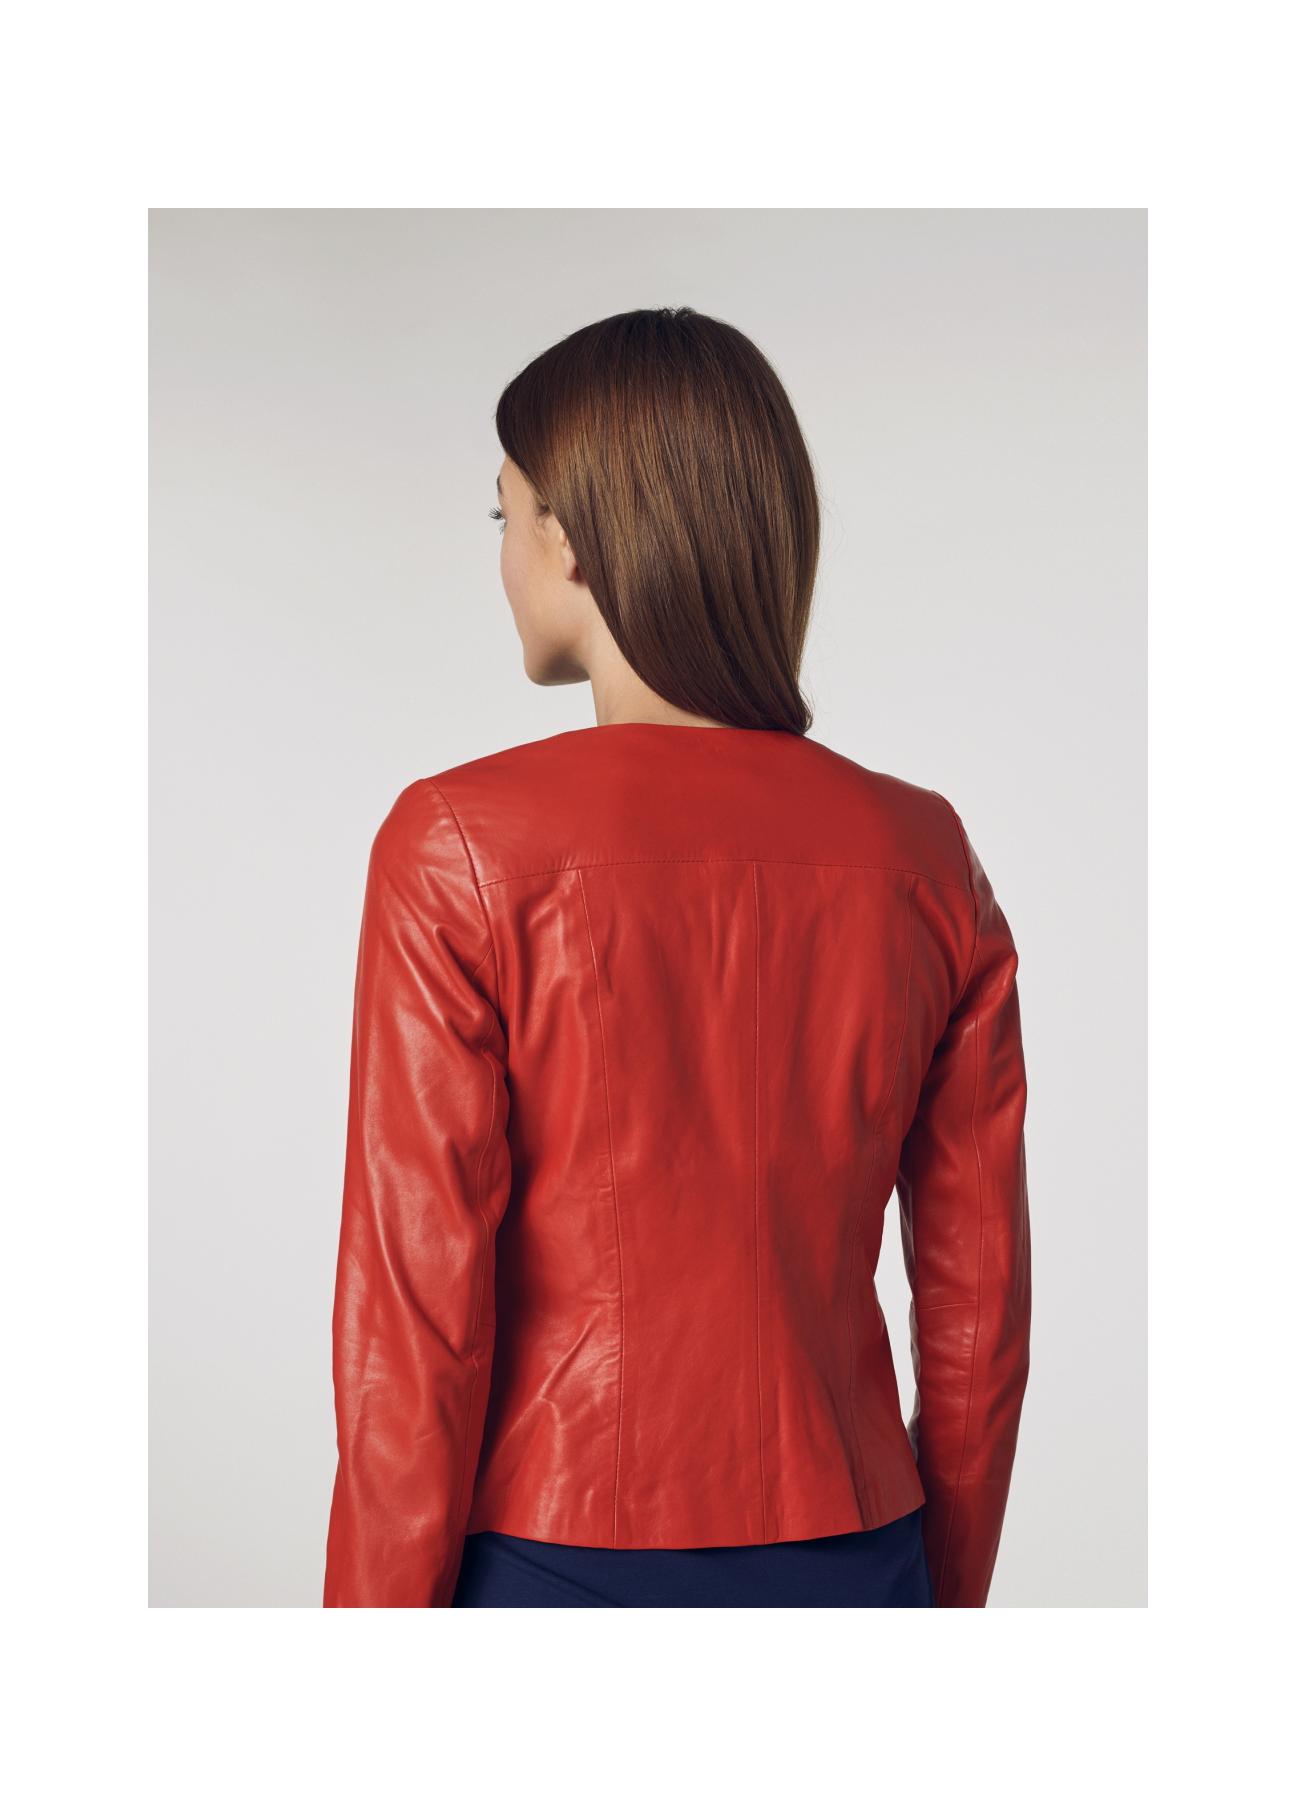 Czerwona taliowana kurtka skórzana damska KURDS-0155-1094(W21)